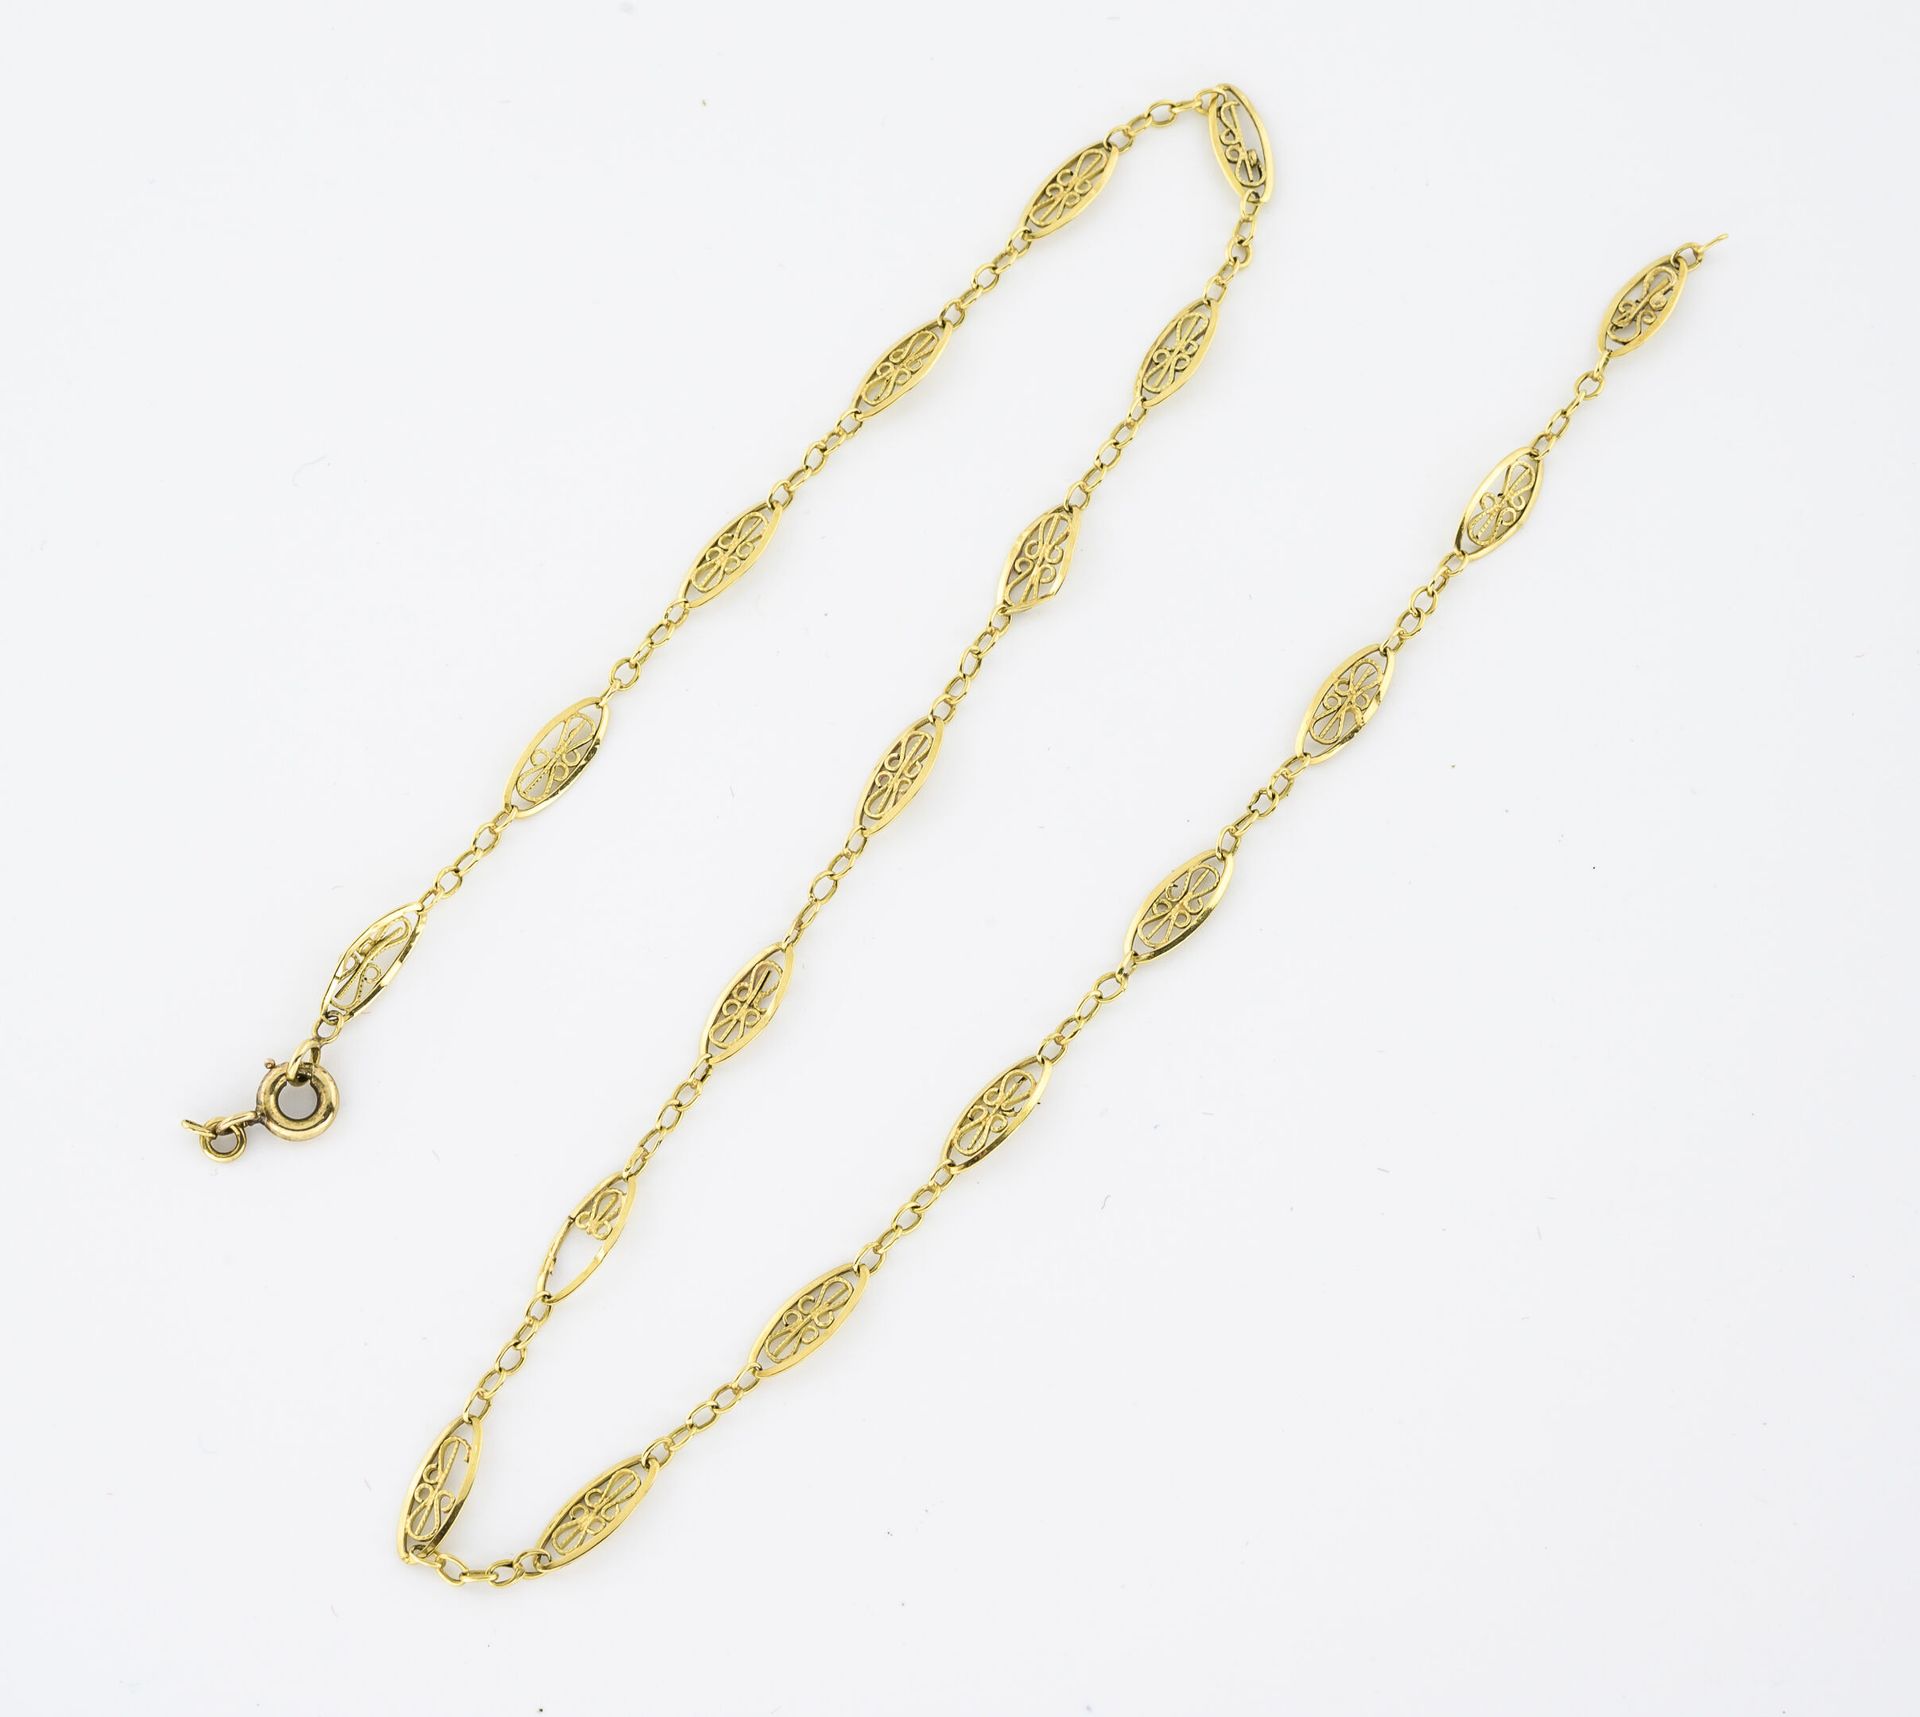 Null 黄K金（750）项链，带花纹链接。

弹簧环扣。

重量：3克。- 长度：42.5厘米。

事故。